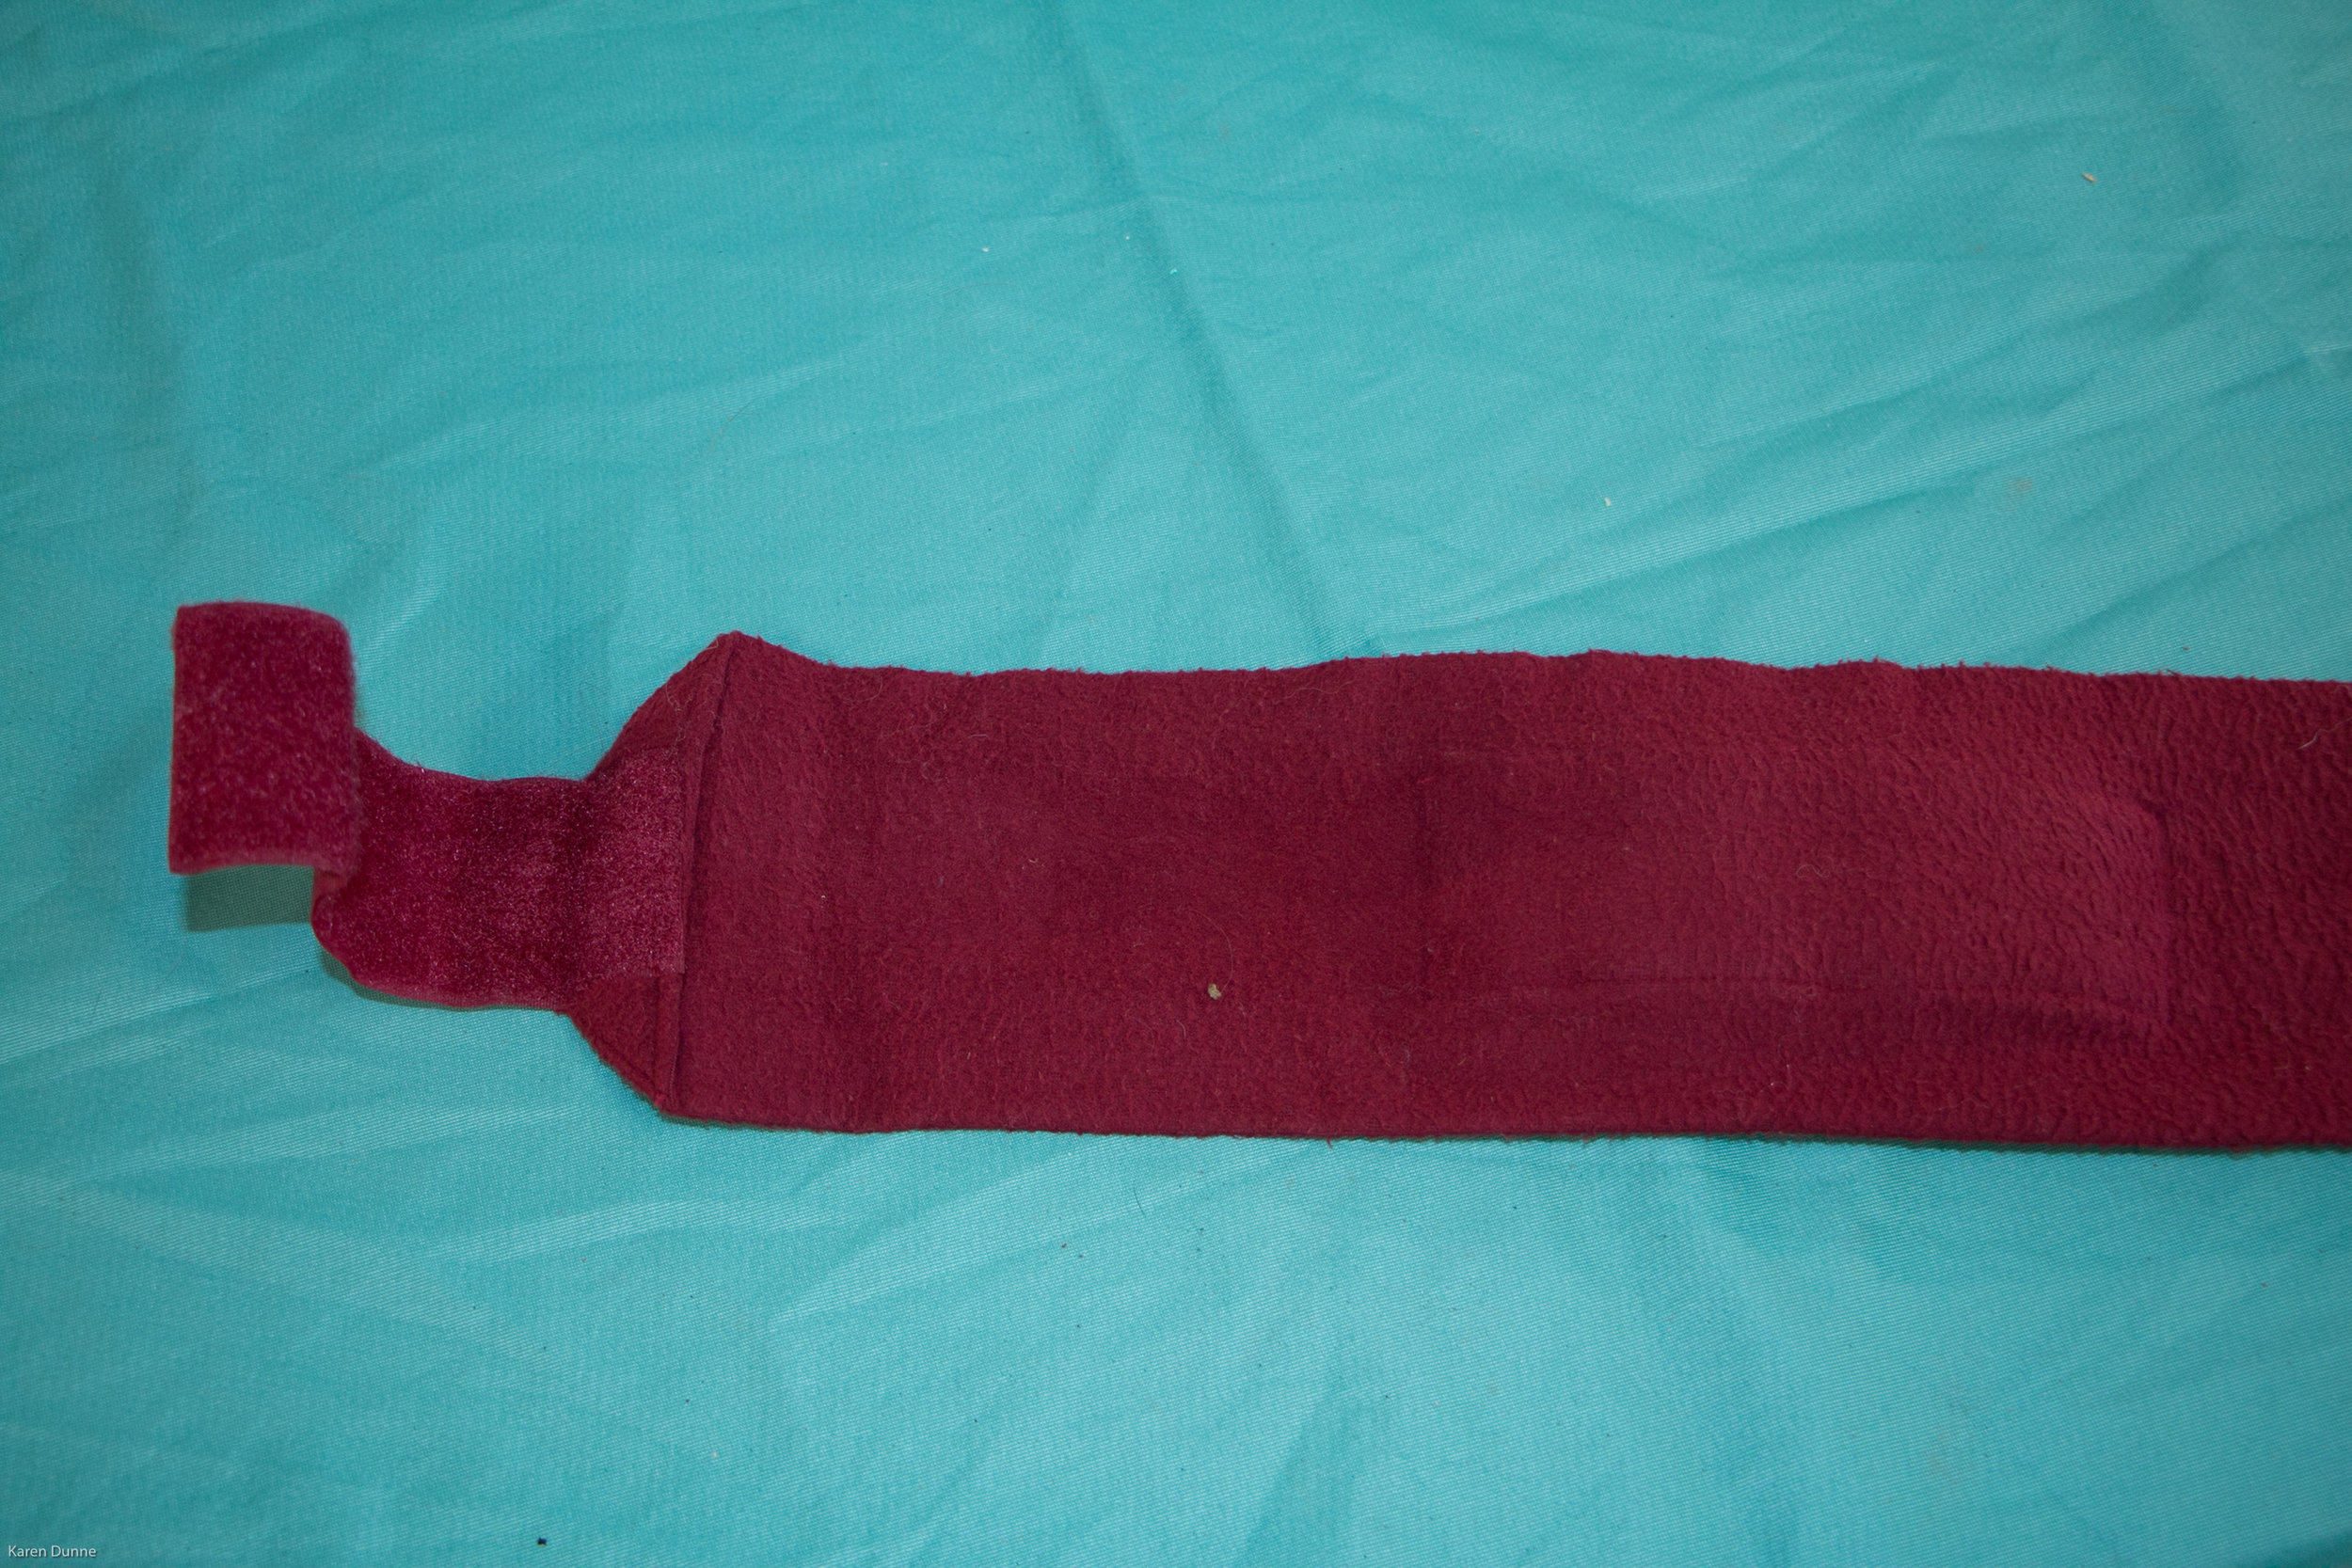  Place bandage with velcro fastening facing upwards 